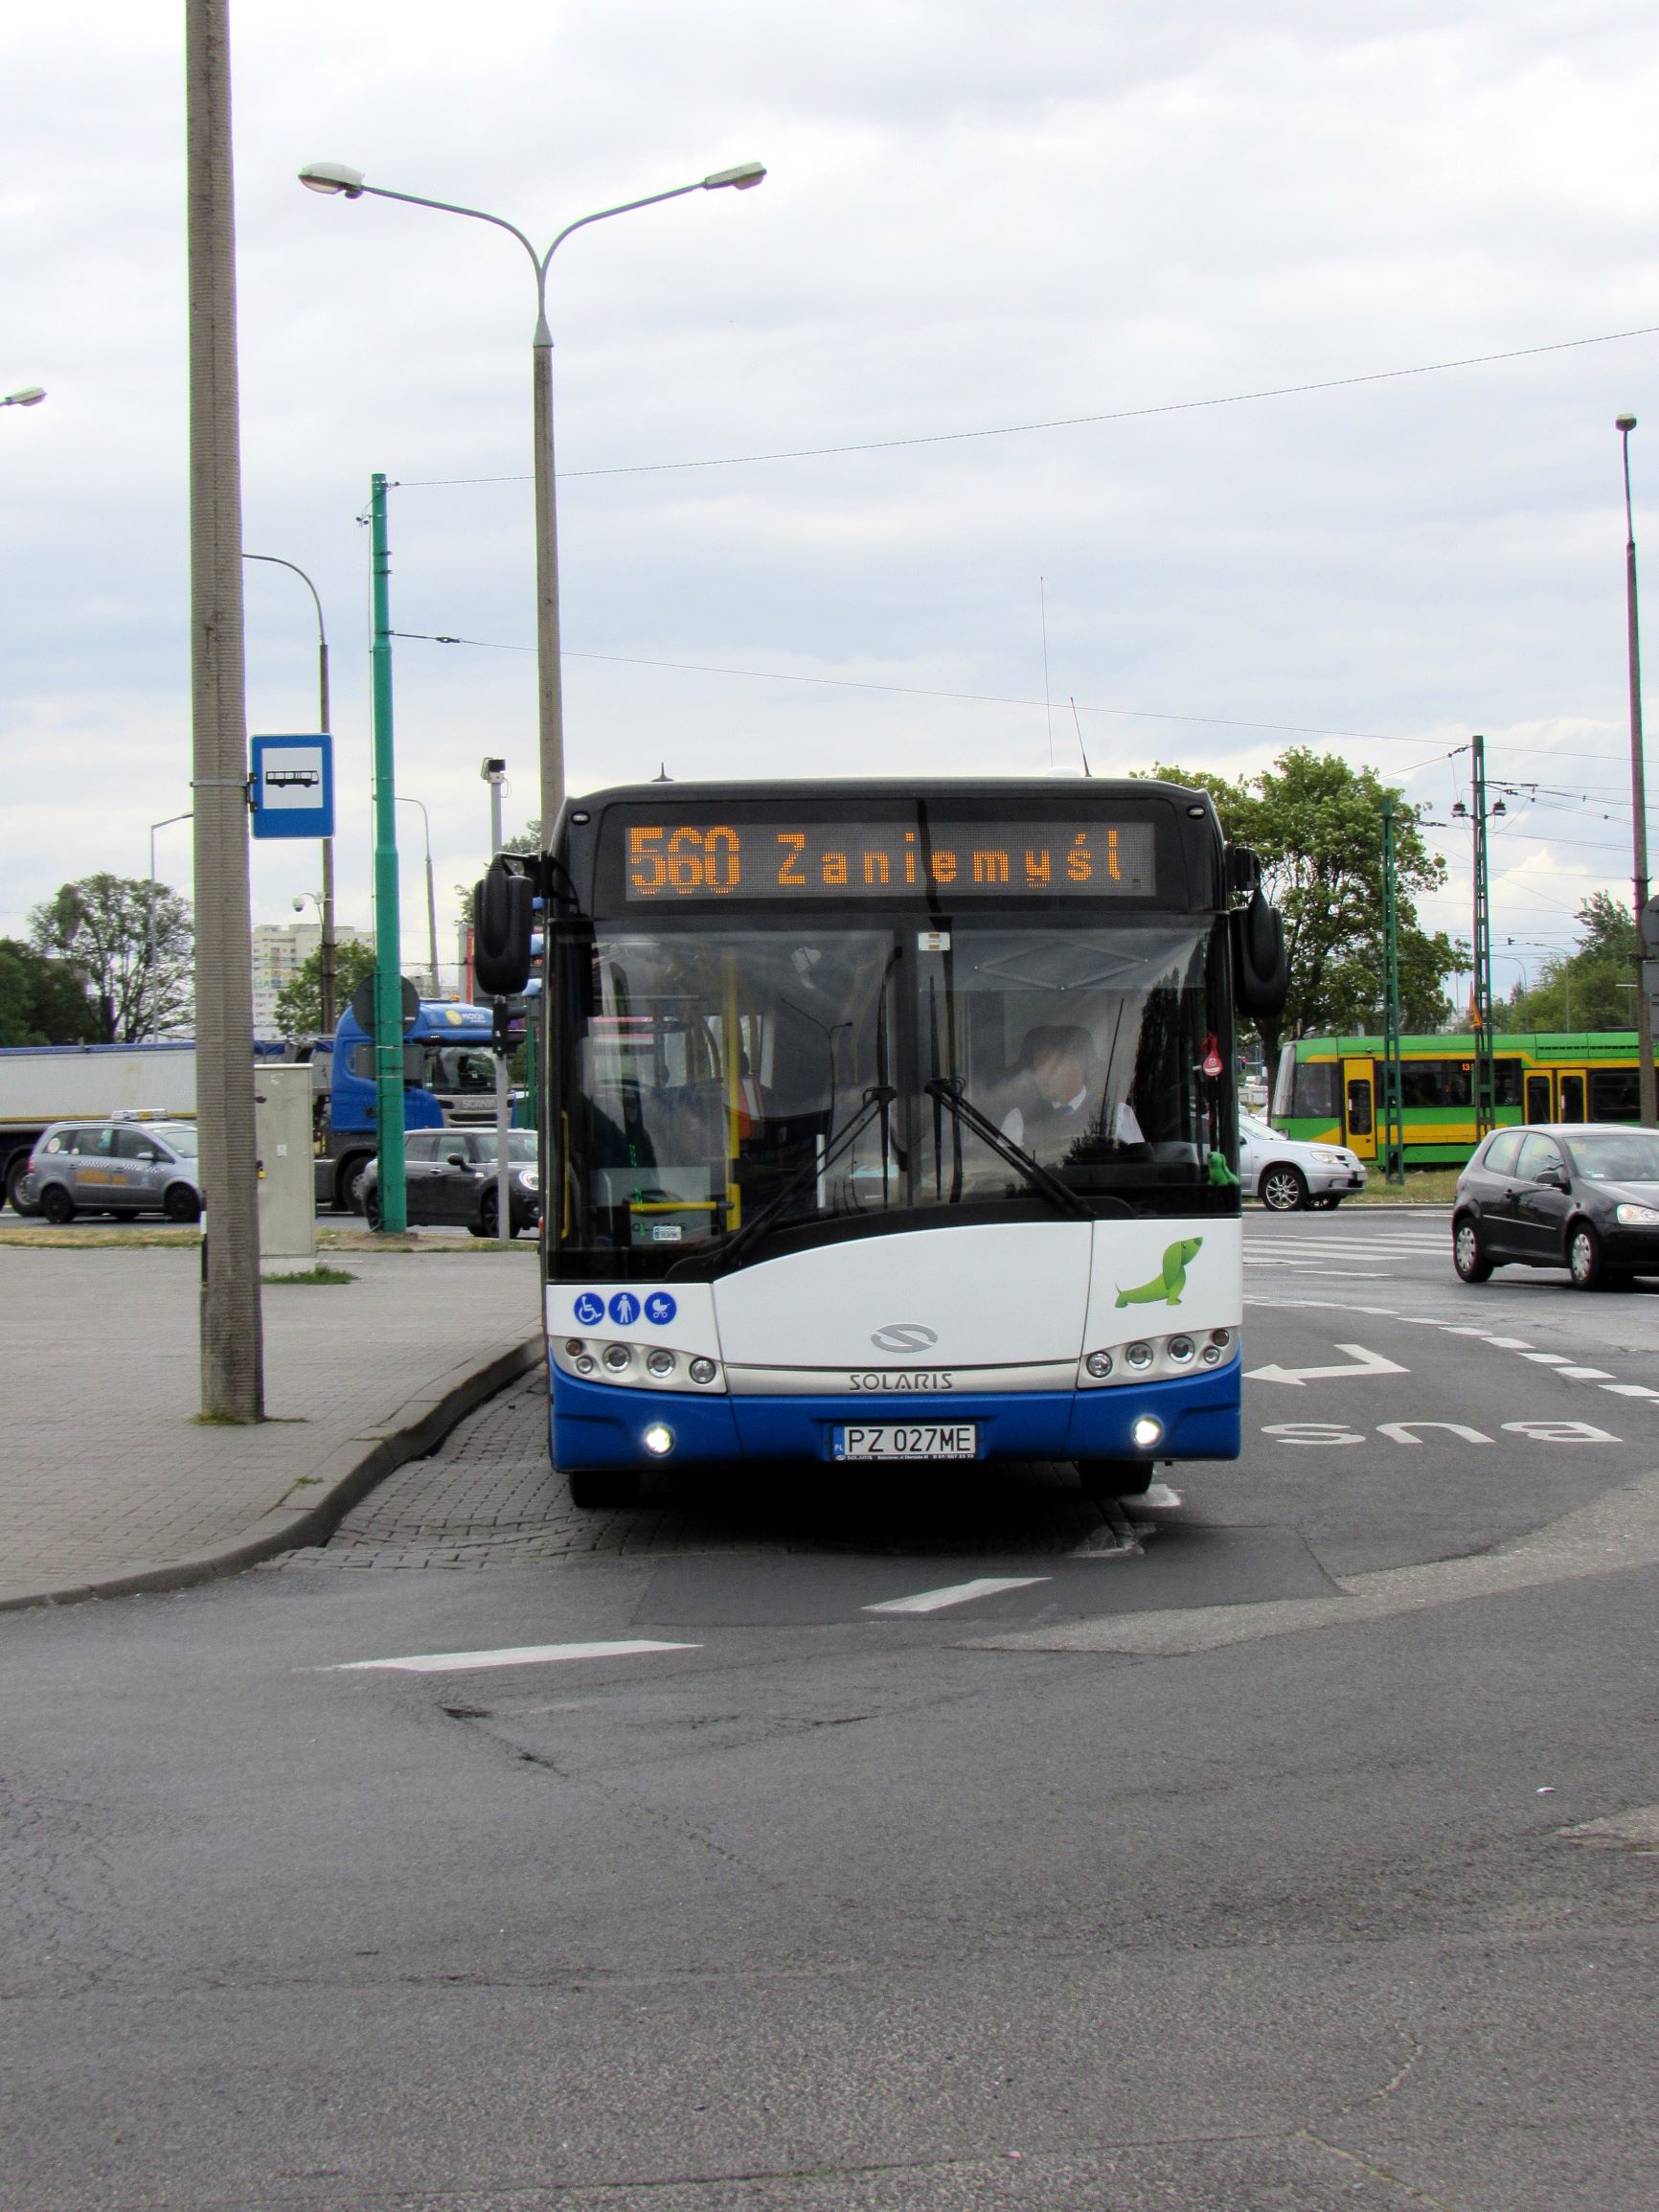 Linia nr 560 – zmiany w komunikacji w Zaniemyślu w sobotę (30 lipca) od godziny 12:00